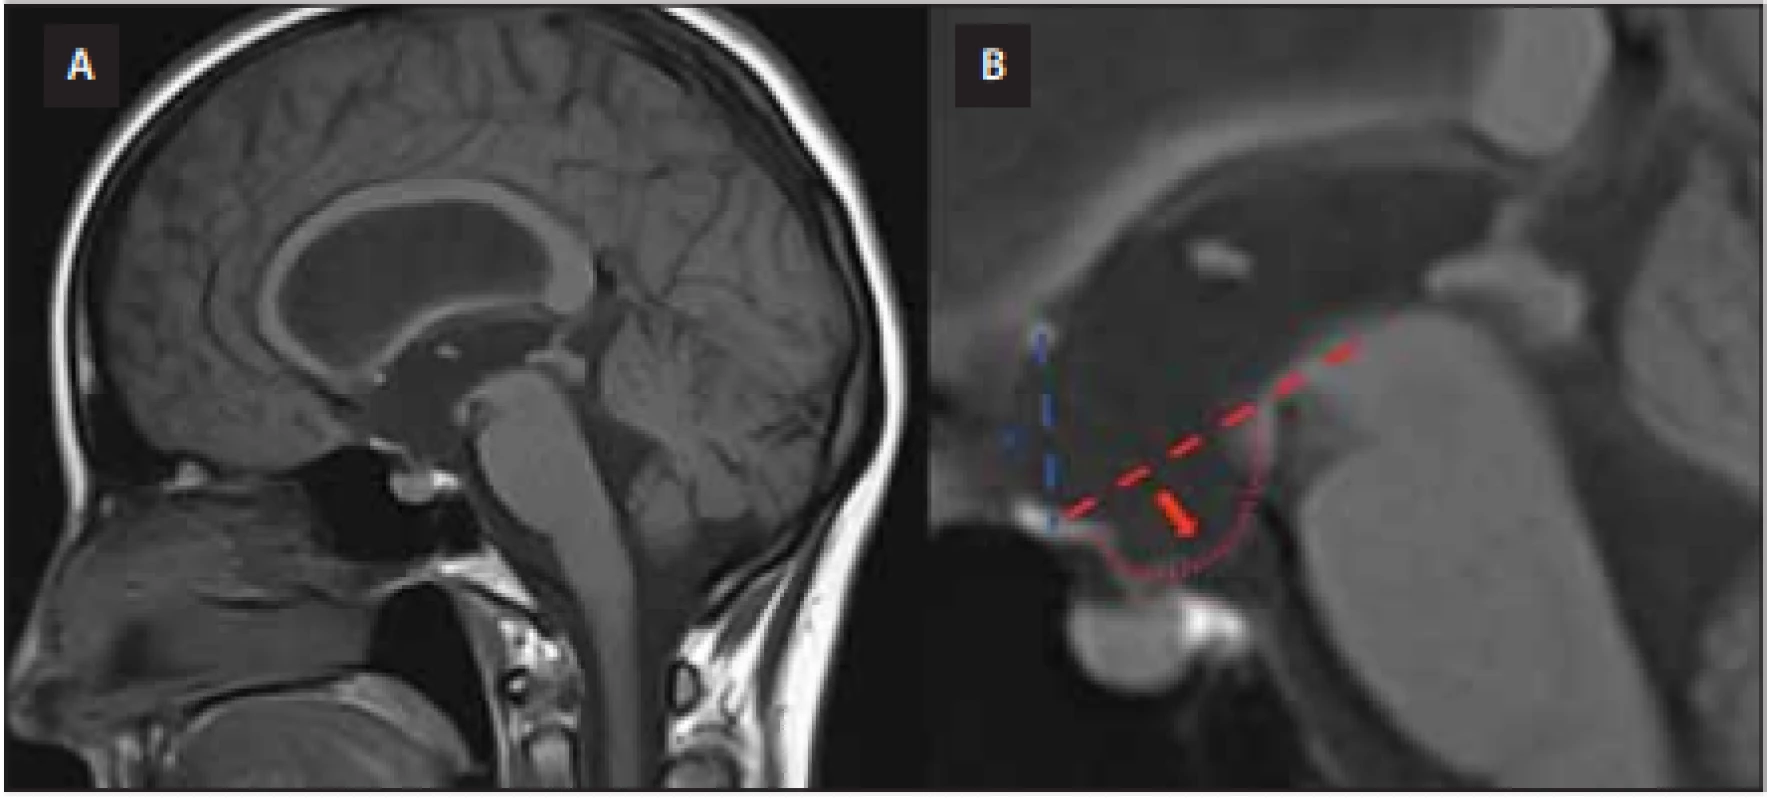  MR mozku, T1 vážený obraz, sagitální projekce. (A) Zobrazení vyjádřeného bowingu 
třetí komory. (B) Detailní pohled na třetí komoru. Spodina třetí komory (označena červenou 
šipkou) přesahuje referenční linii rozpínající se mezi horní častí tegmenta mesencefala a optickým chiasma (červená, přerušovaná čára) se současným vyklenutím lamina terminalis 
(označeno *) přesahujícím spojnici mezi chiasma a přední komisurou (modrá čára).<br>
Fig. 2. Brain MRI, T1-WI, sagittal projection. (A) A neuroimaging study demonstrating 
third ventricular bowing. (B) A third ventricle is shown in detail. Deformation of the third 
ventricle floor (red arrow) below a defi ned reference line drawn from the middle of the 
optic chiasm to the superior-most aspect of the midbrain tegmentum (red, dashed line) 
together with anterior bulging of the lamina terminalis (marked by *) over the line drawn 
between the chiasma and the anterior commissure (blue line).